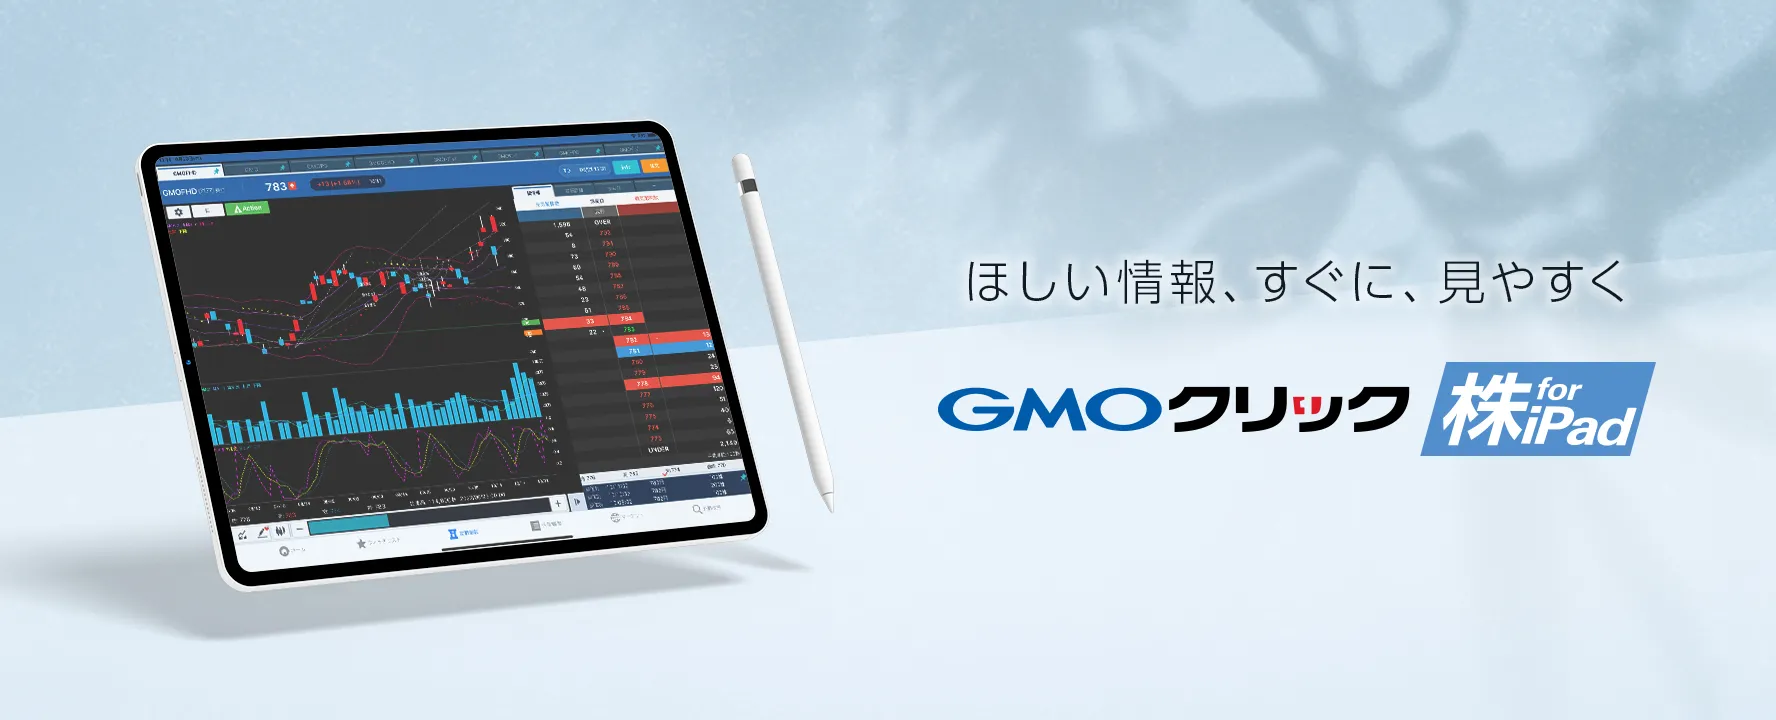 GMOクリック 株 for iPad ほしい情報、すぐに、見やすく